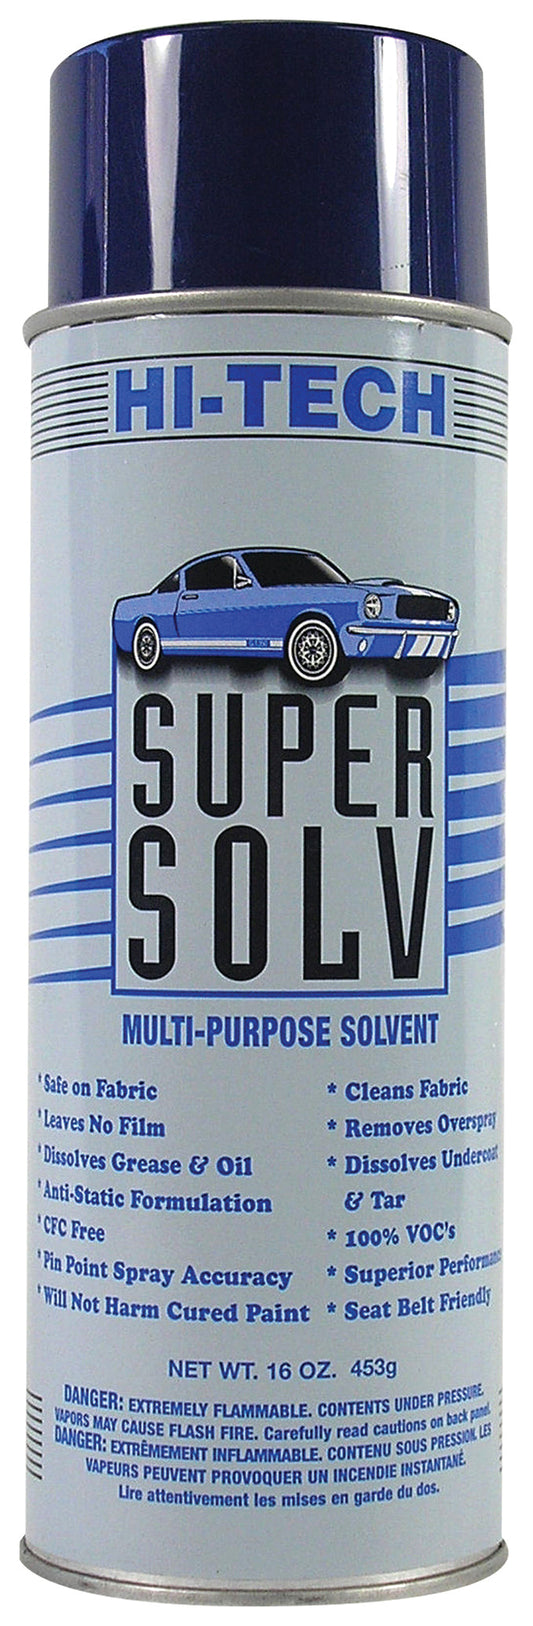 Super Solv Multi Purpose Solvent